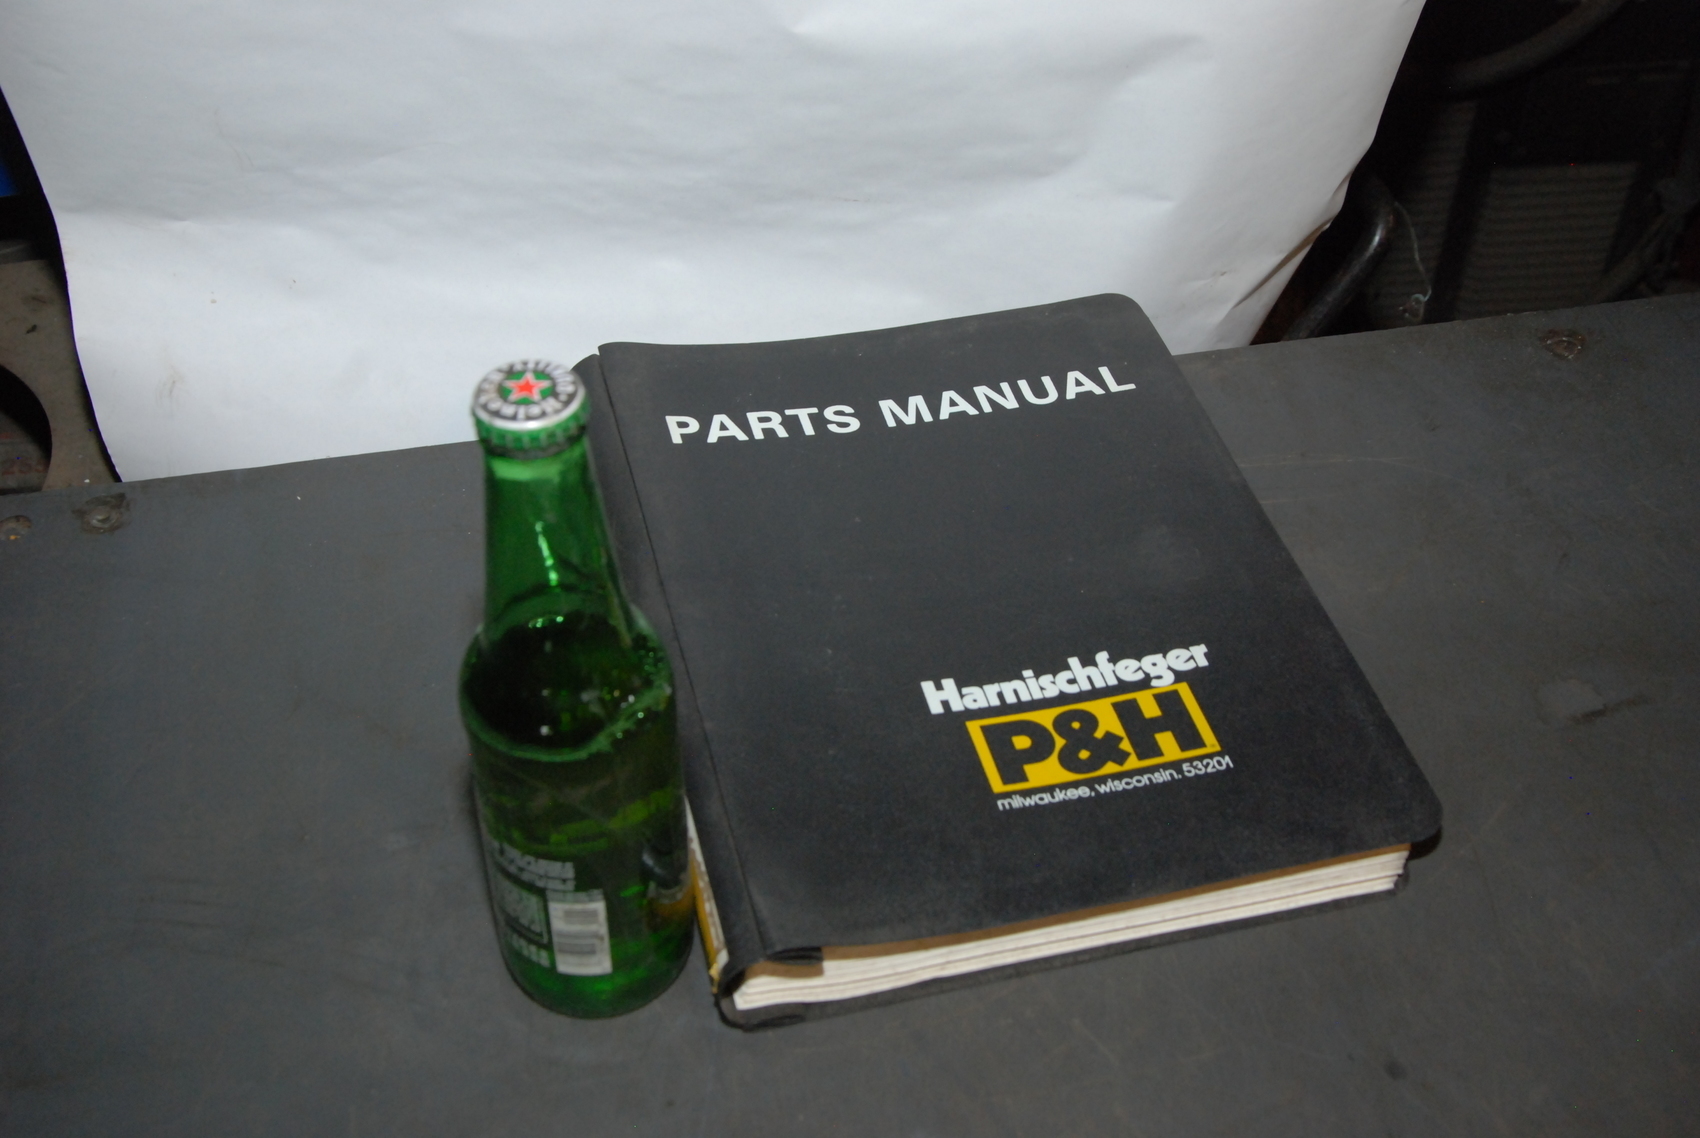 P and H R-150 Crane parts manual nopl